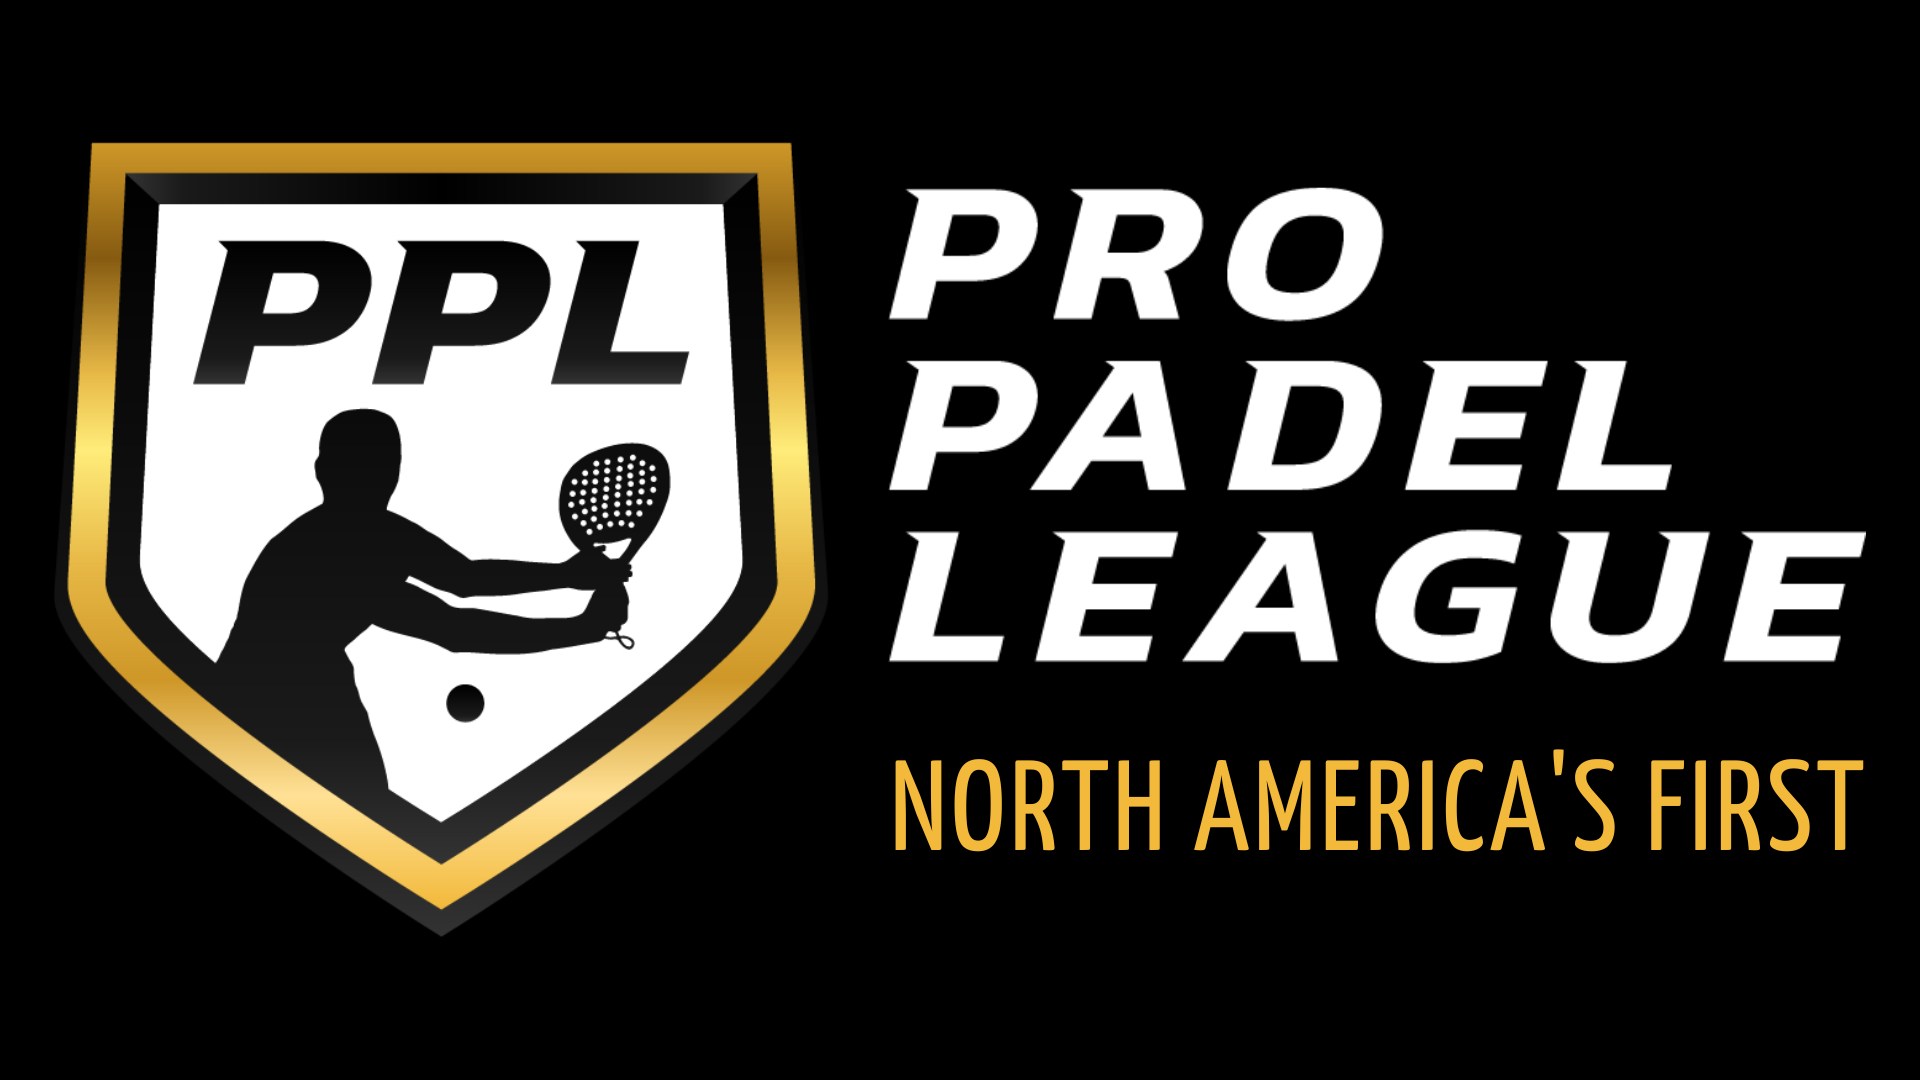 O profissional Padel League é lançada nos EUA/Canadá